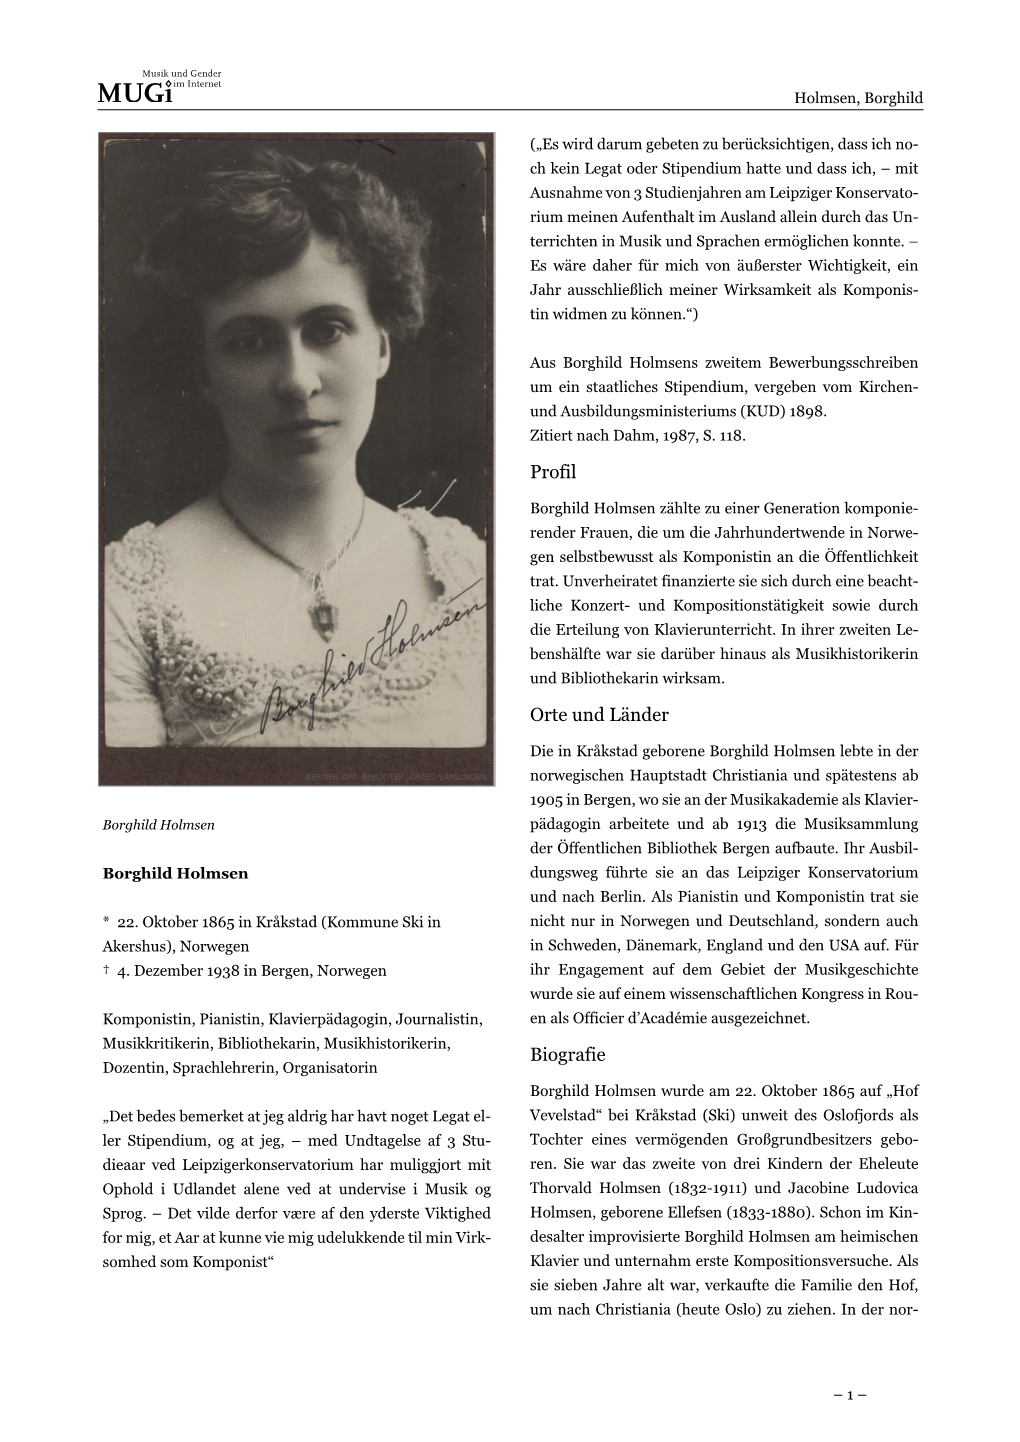 Borghild Holmsens Zweitem Bewerbungsschreiben Um Ein Staatliches Stipendium, Vergeben Vom Kirchen- Und Ausbildungsministeriums (KUD) 1898